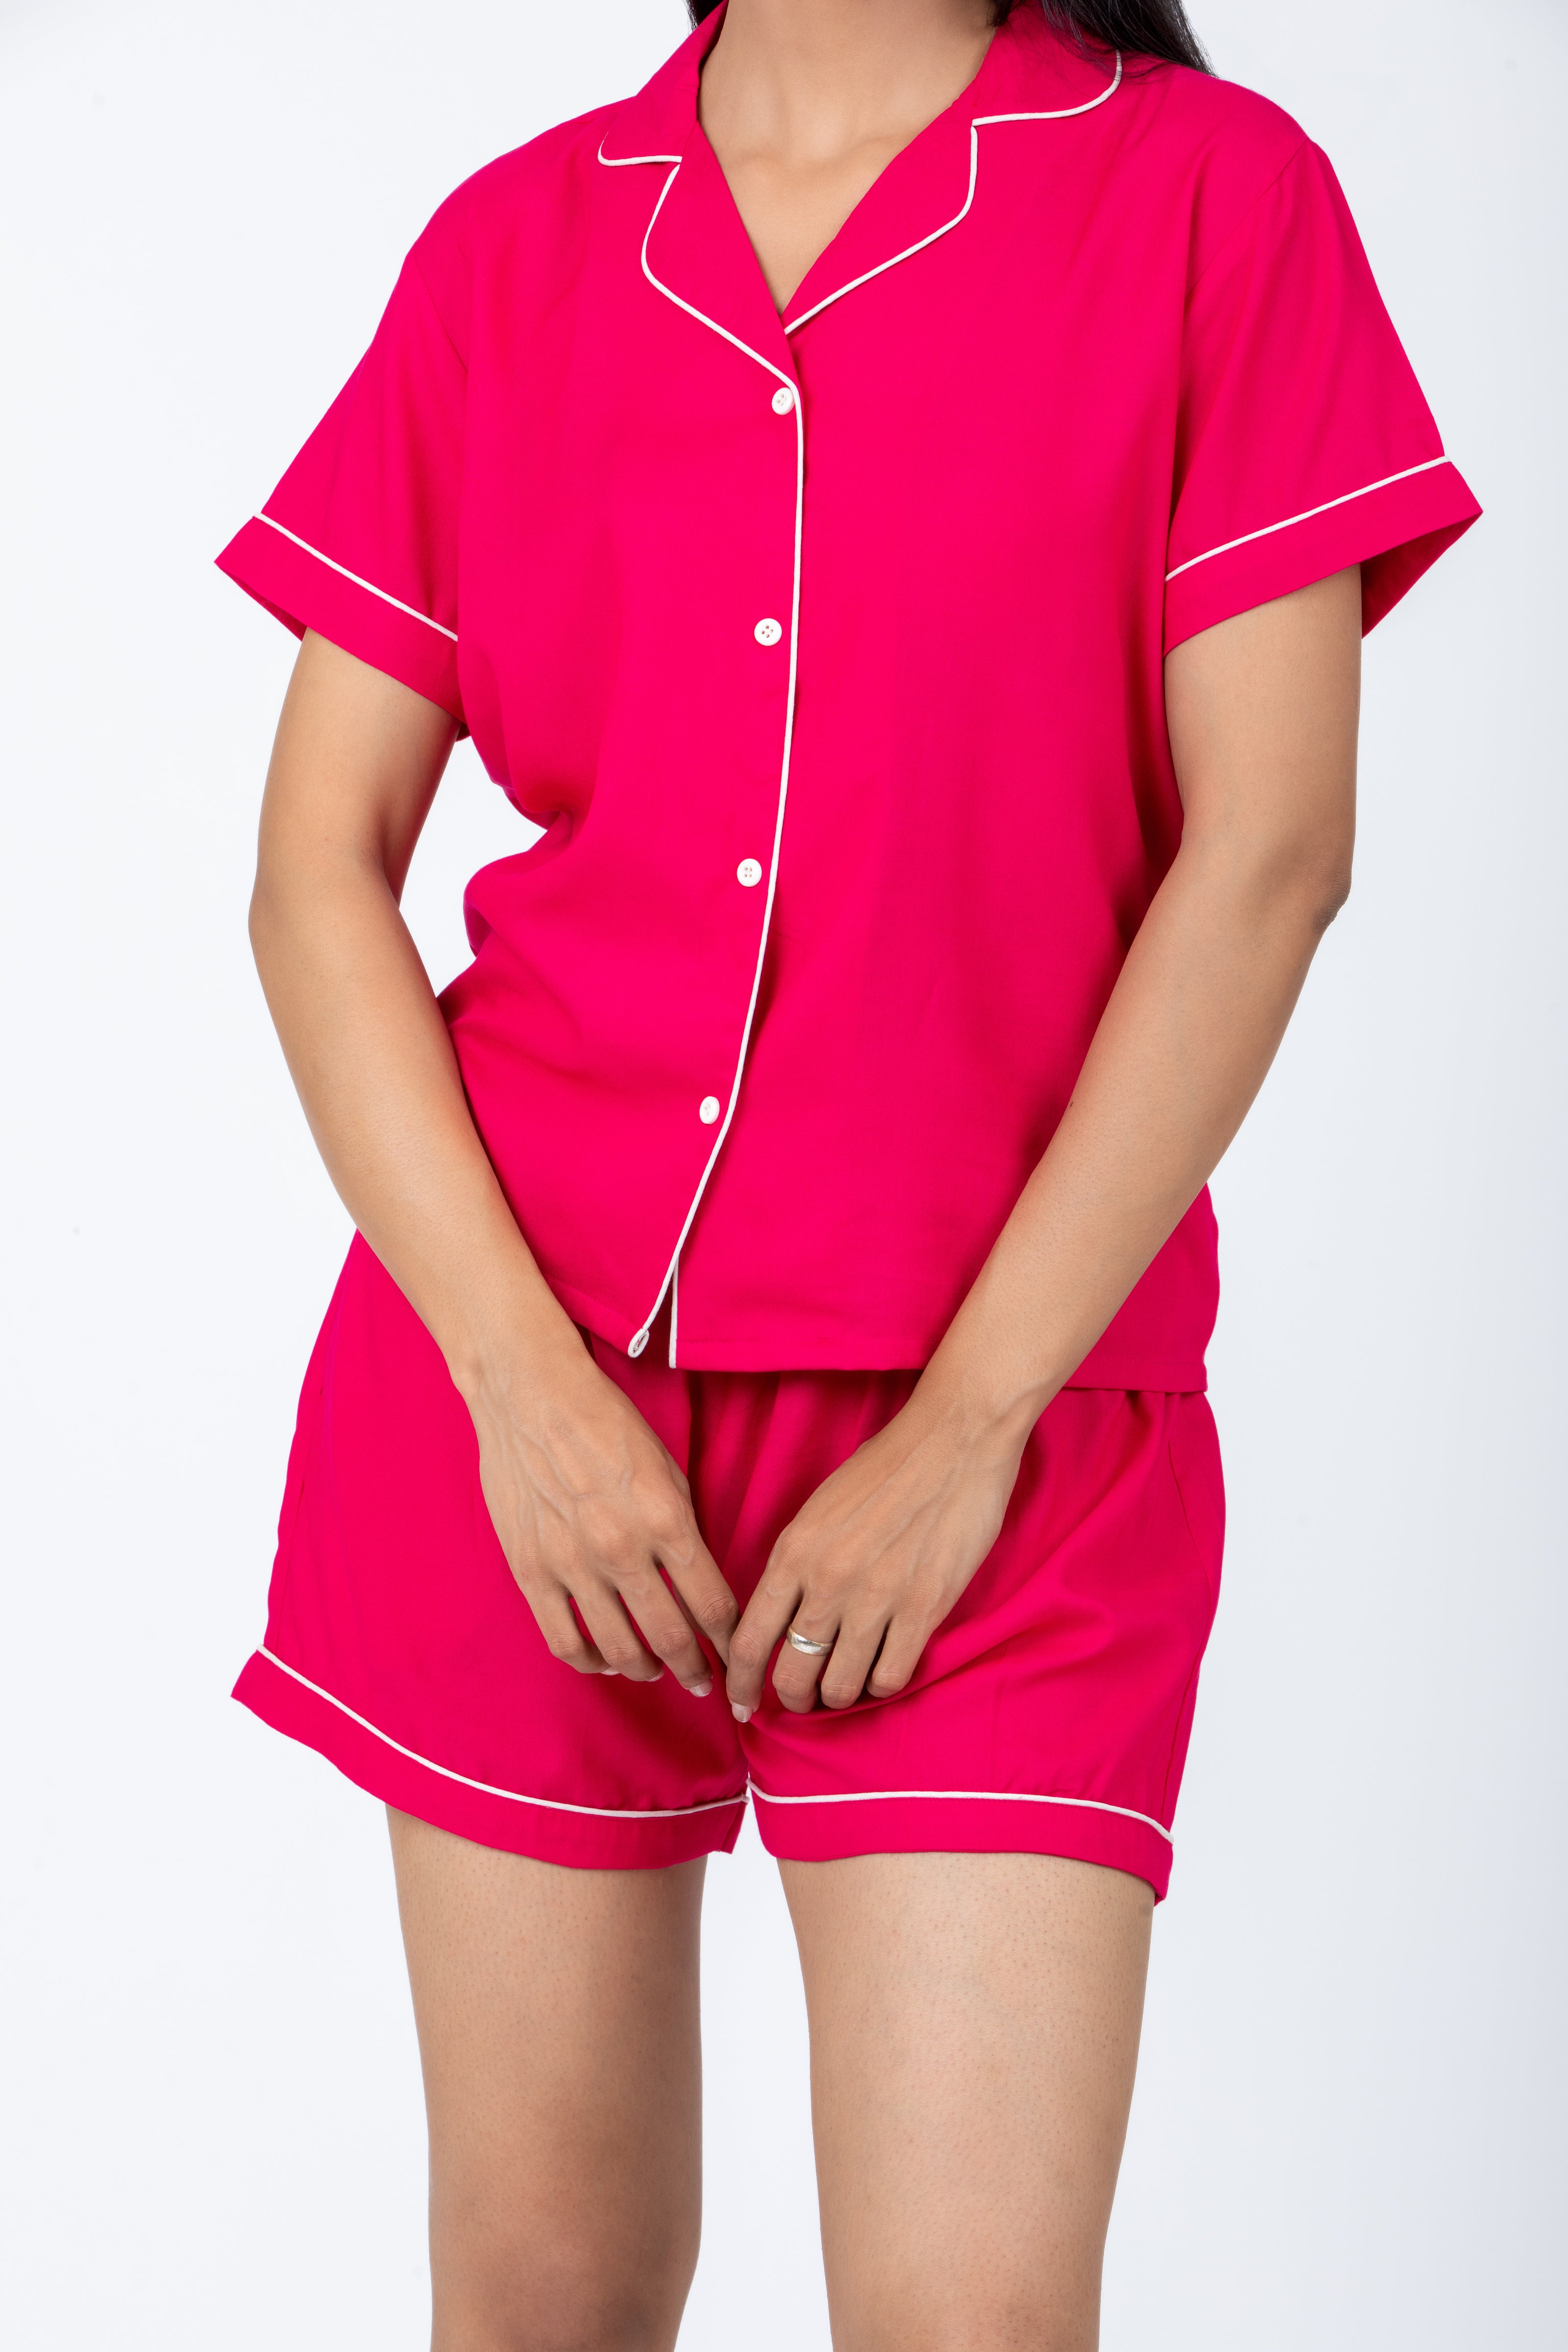 Hot Pink Loungewear - Shorts Set